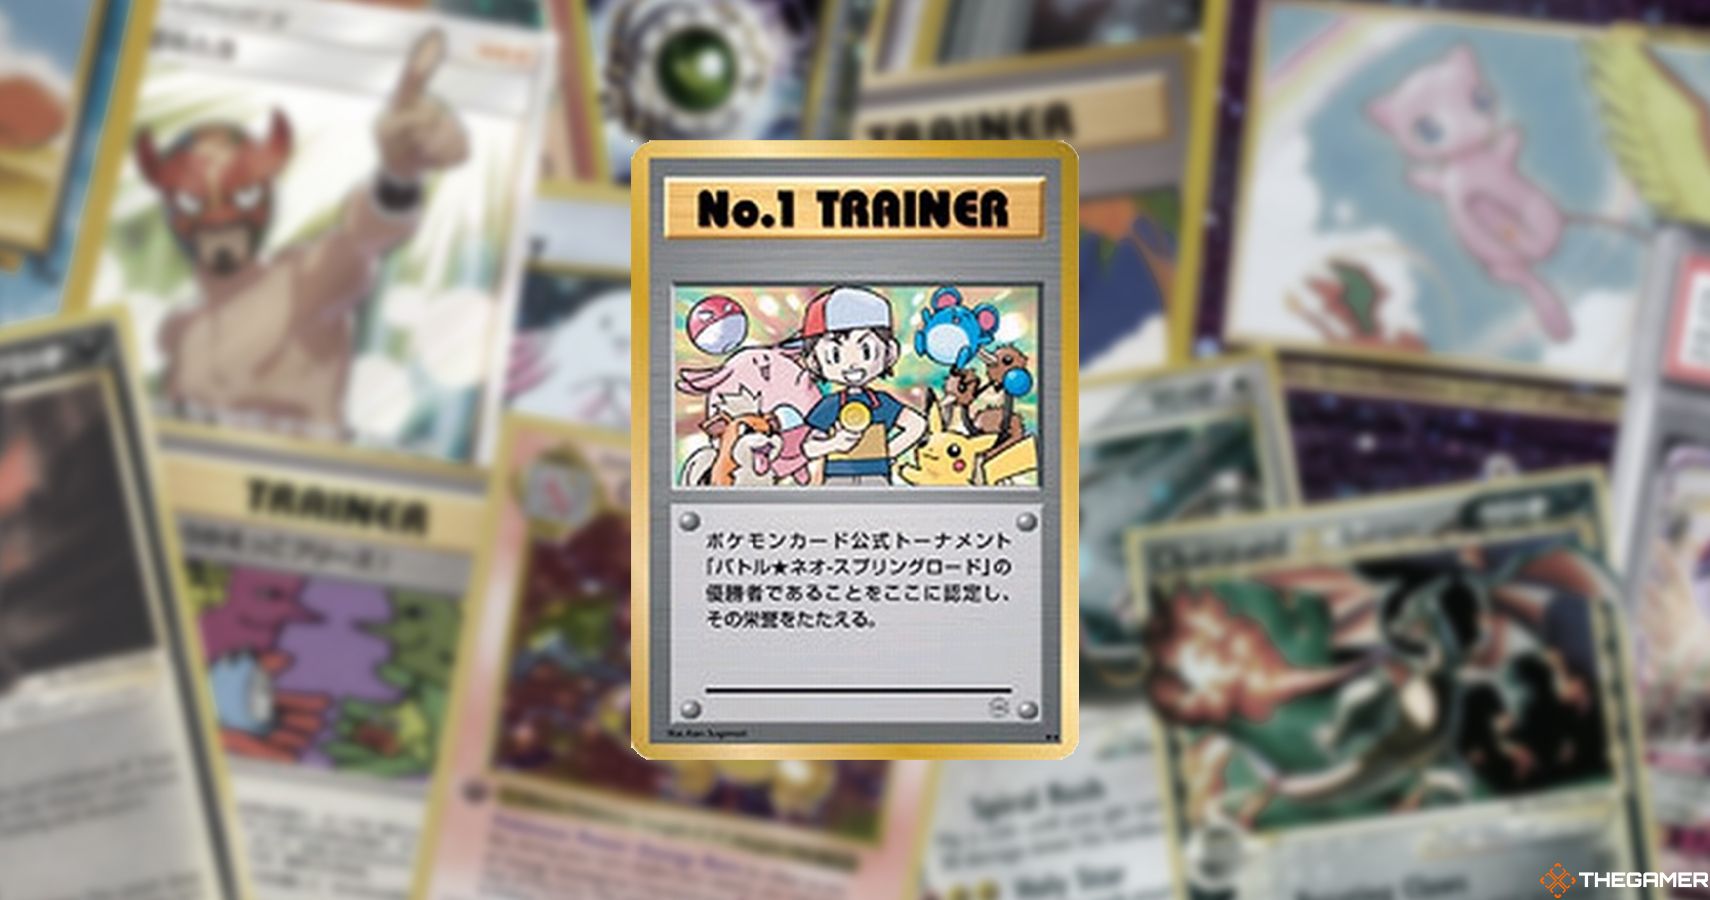 No 1 Trainer